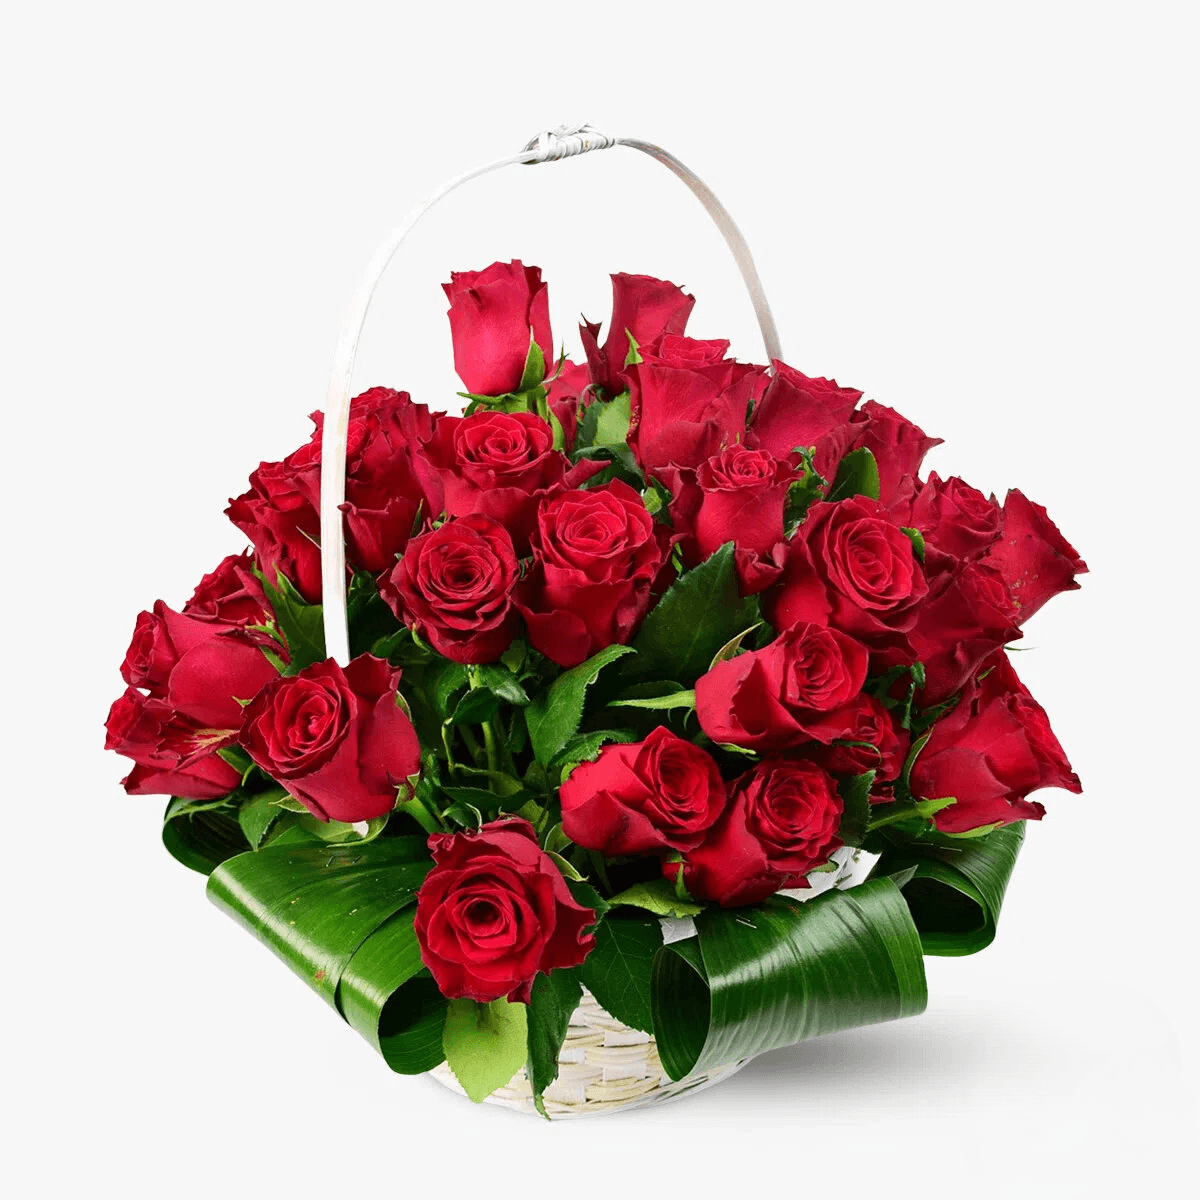 Cos cu flori – 51 trandafiri rosii in cos – Standard